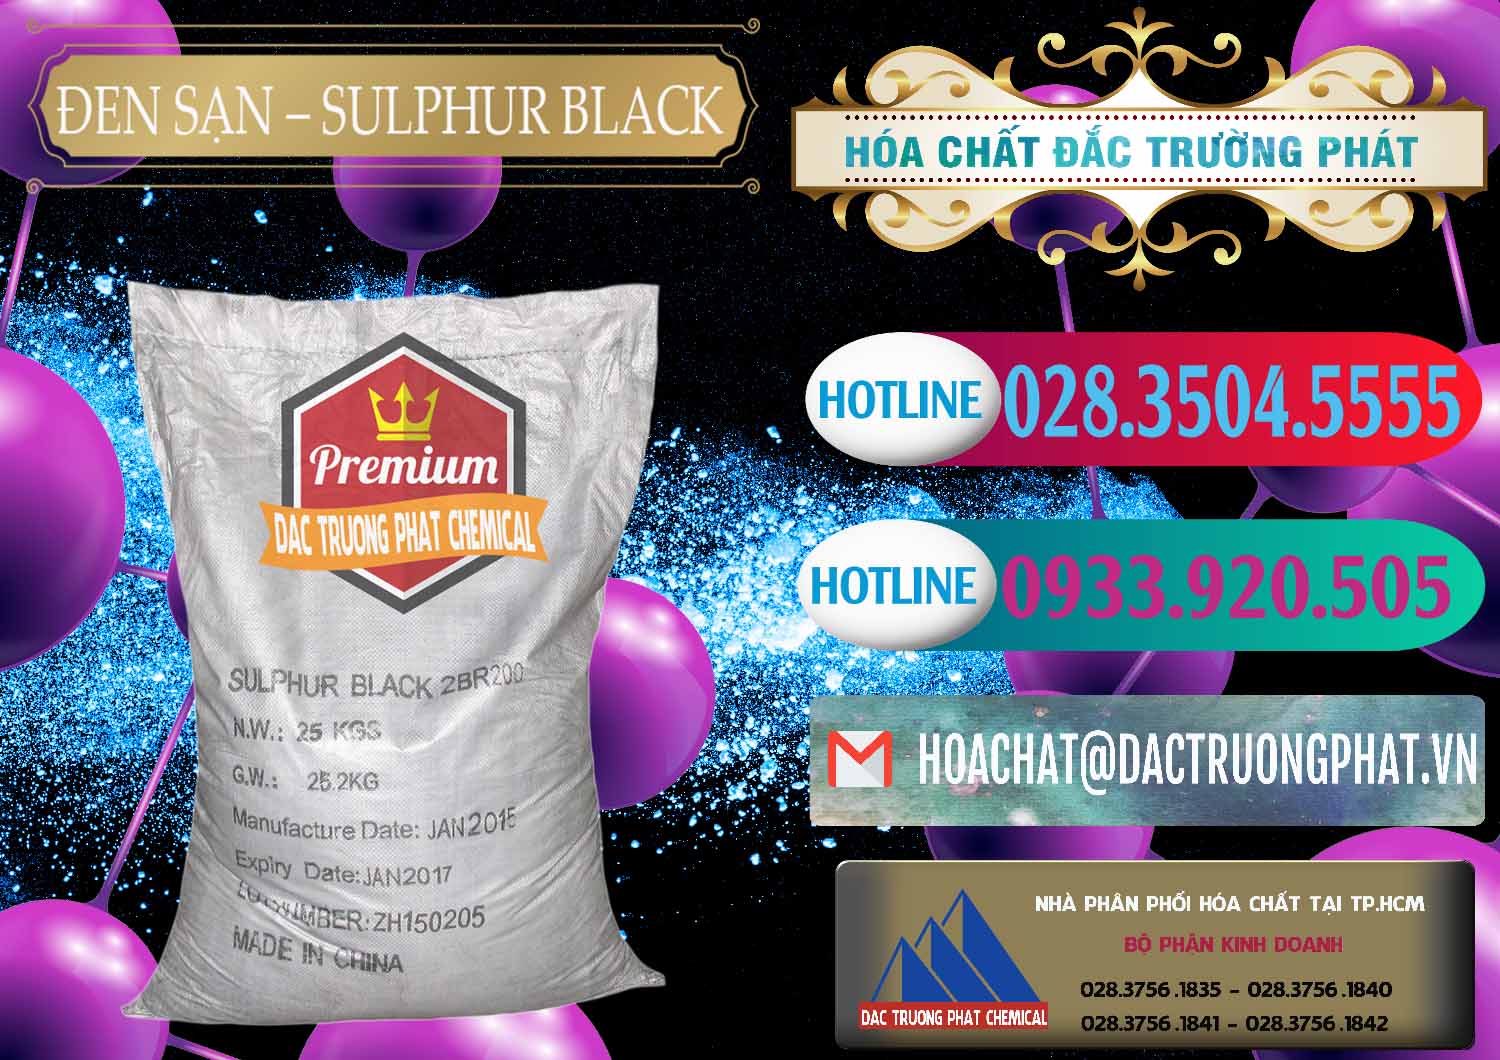 Công ty nhập khẩu _ bán Đen Sạn – Sulphur Black Trung Quốc China - 0062 - Cty cung cấp & phân phối hóa chất tại TP.HCM - truongphat.vn